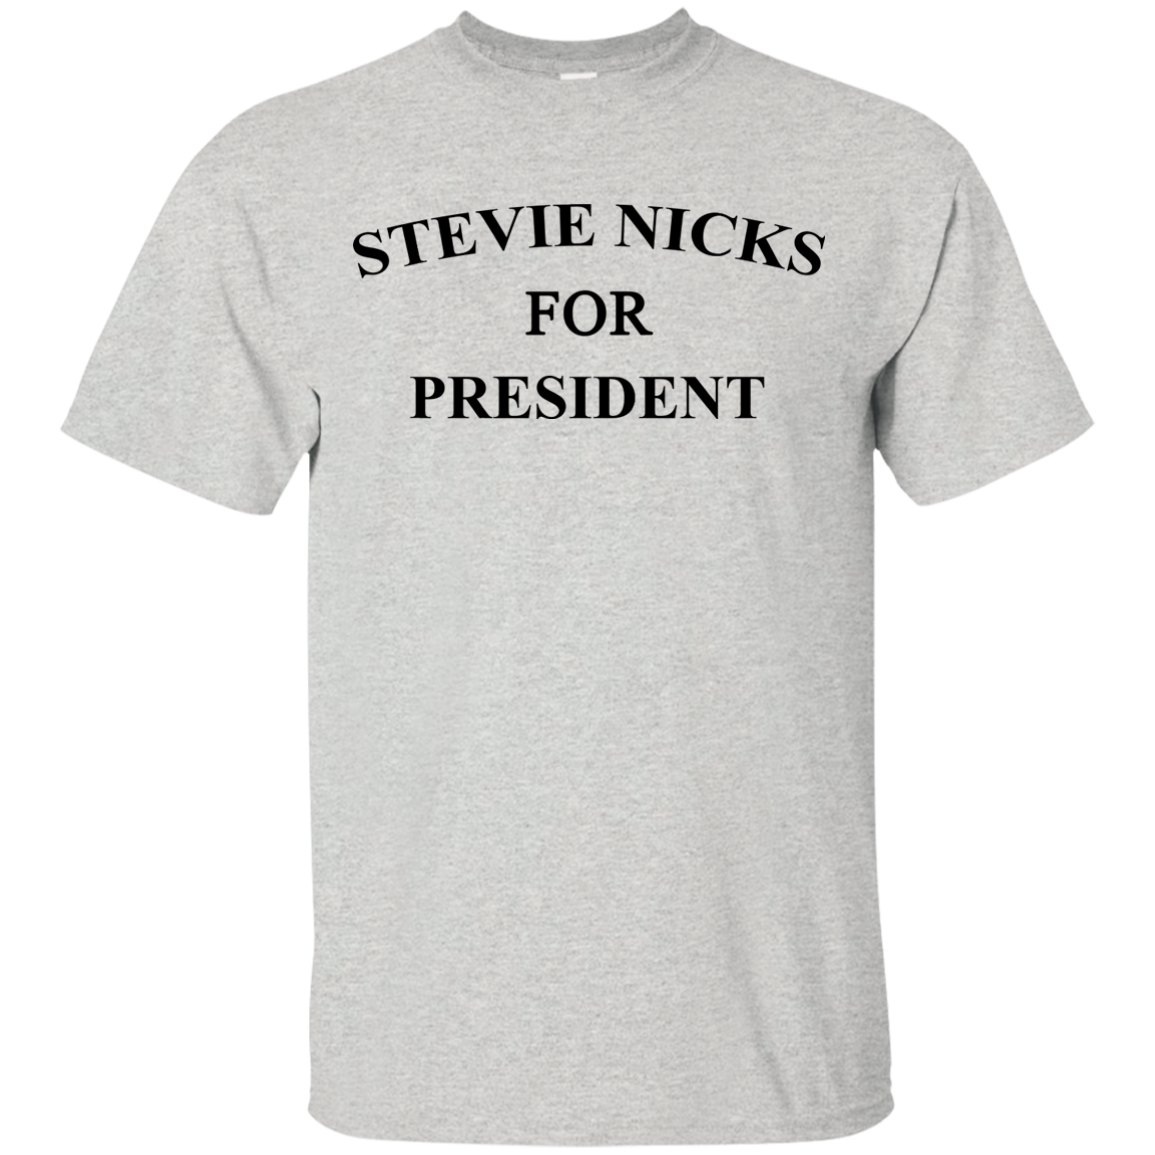 Stevie Nicks for president shirt/ hoodie/ tank